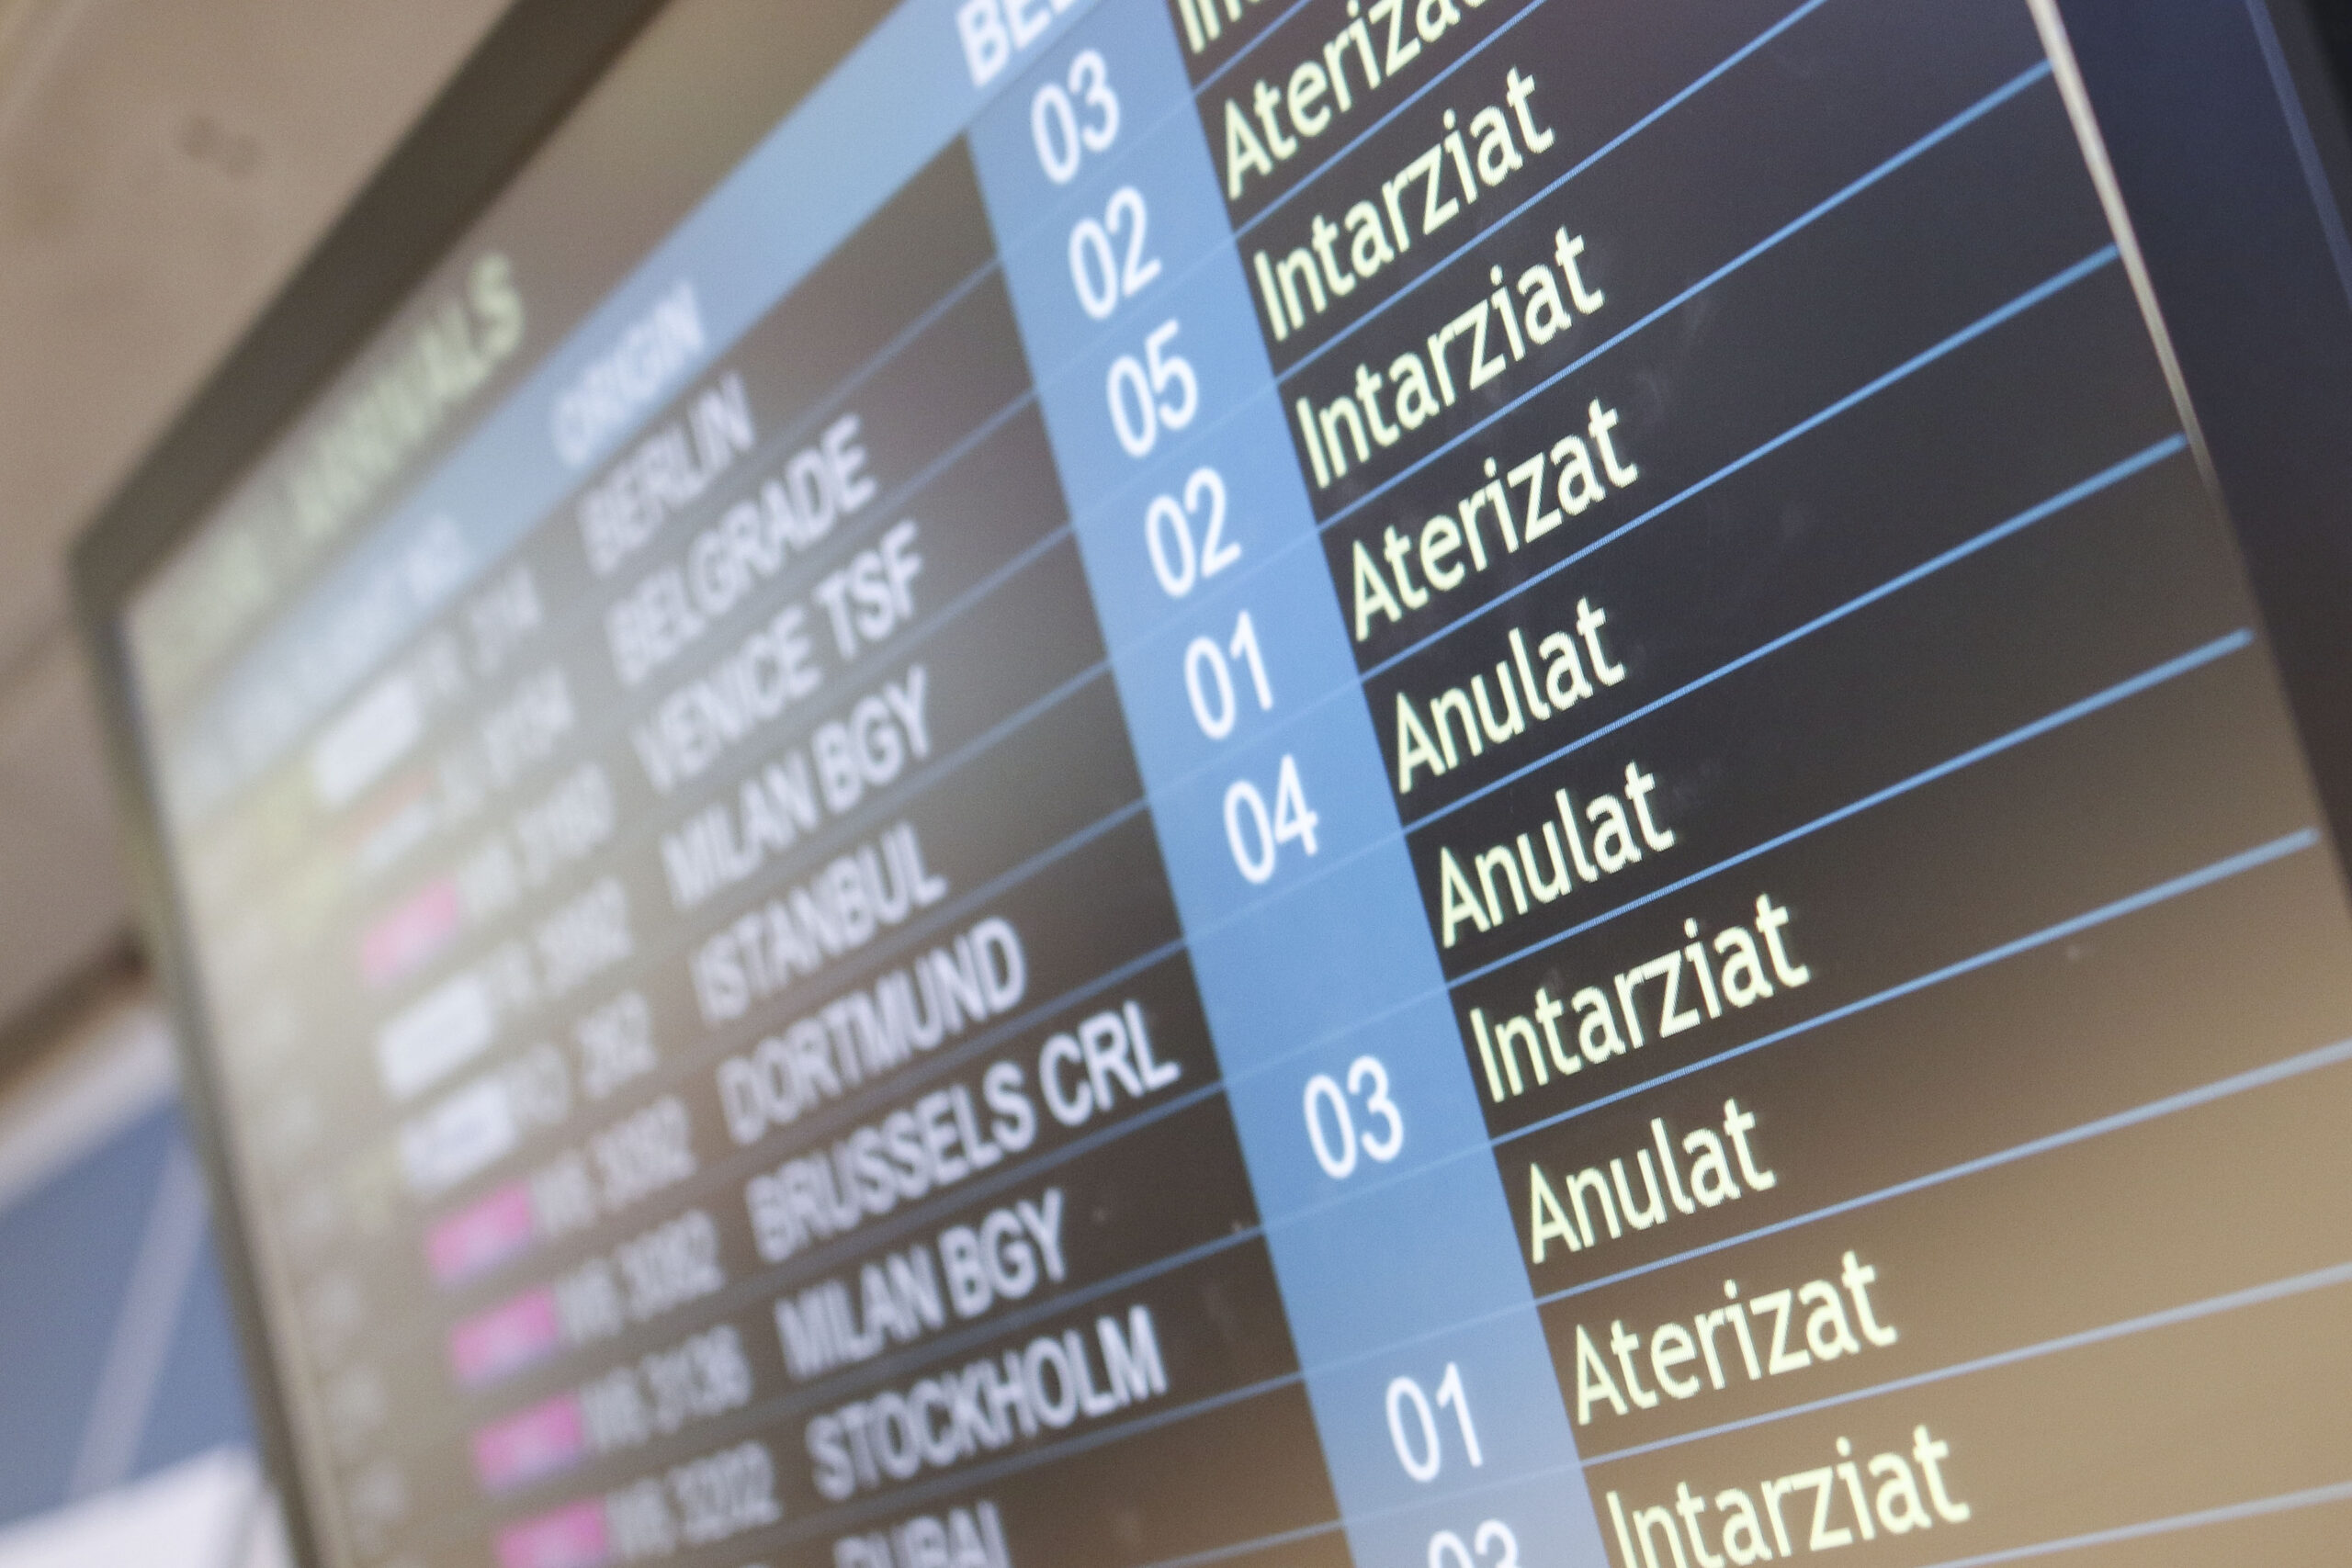 Peste 700 de zboruri au avut întârzieri pe Aeroportul Henri Coandă, în perioada 14-20 iulie